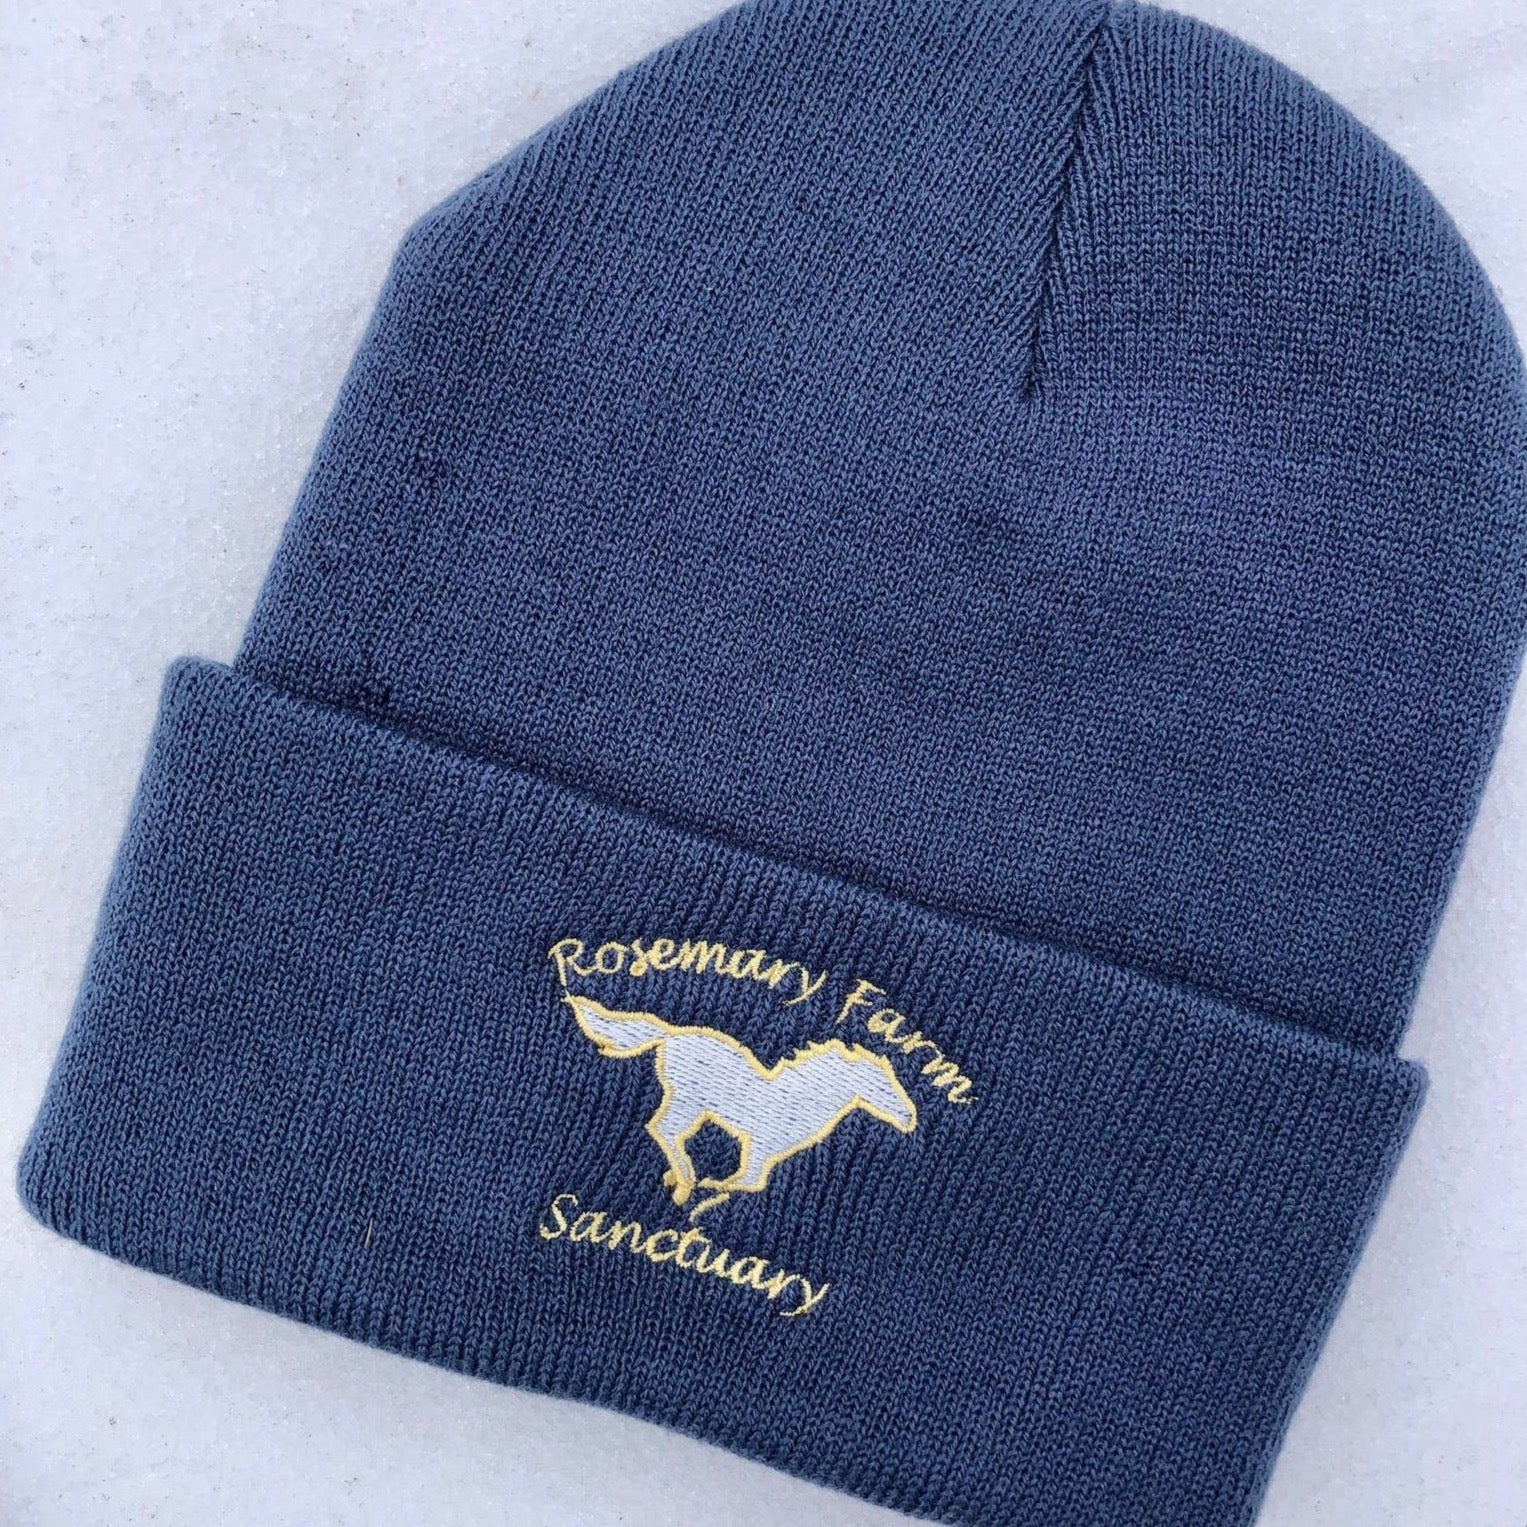 Rosemary Farm Logo Knit Caps